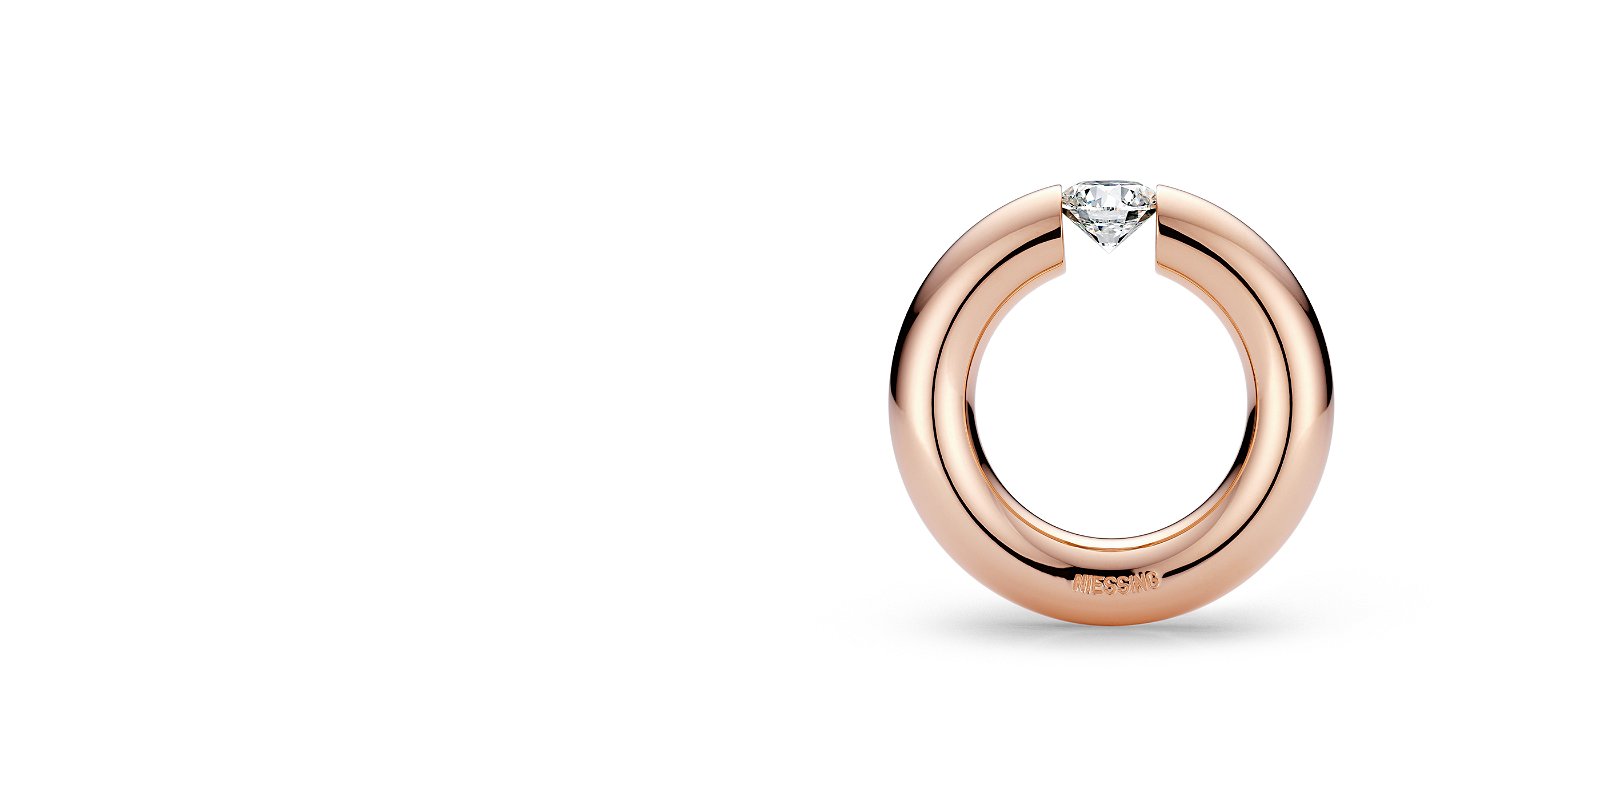 霓星——结婚戒指、订婚戒指、张力戒指、设计师珠宝